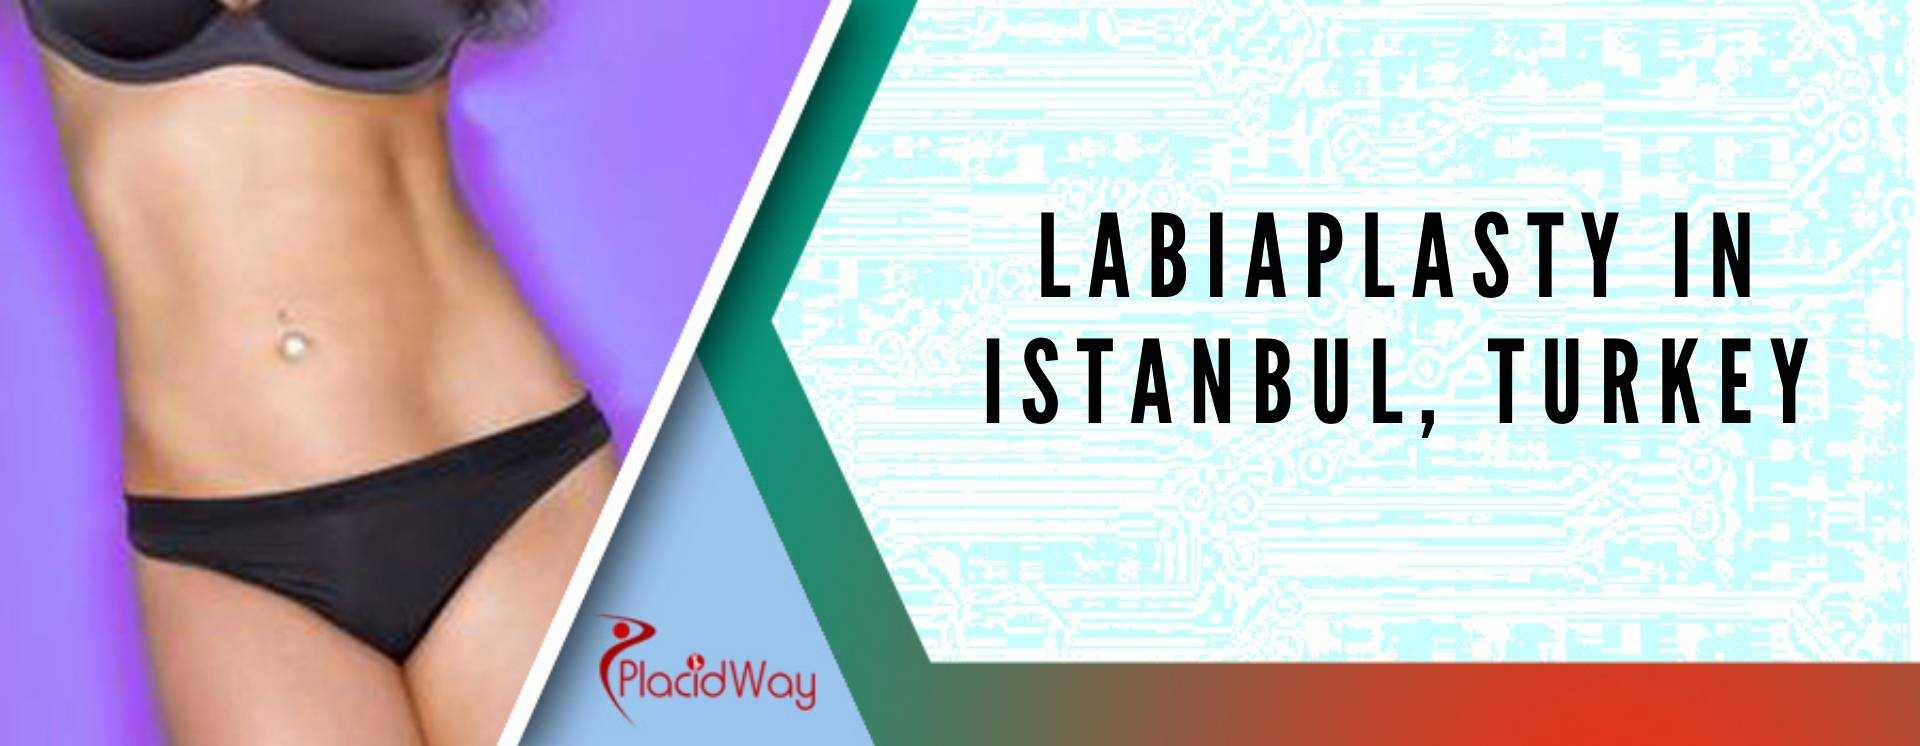 Labiaplasty in Istanbul, Turkey